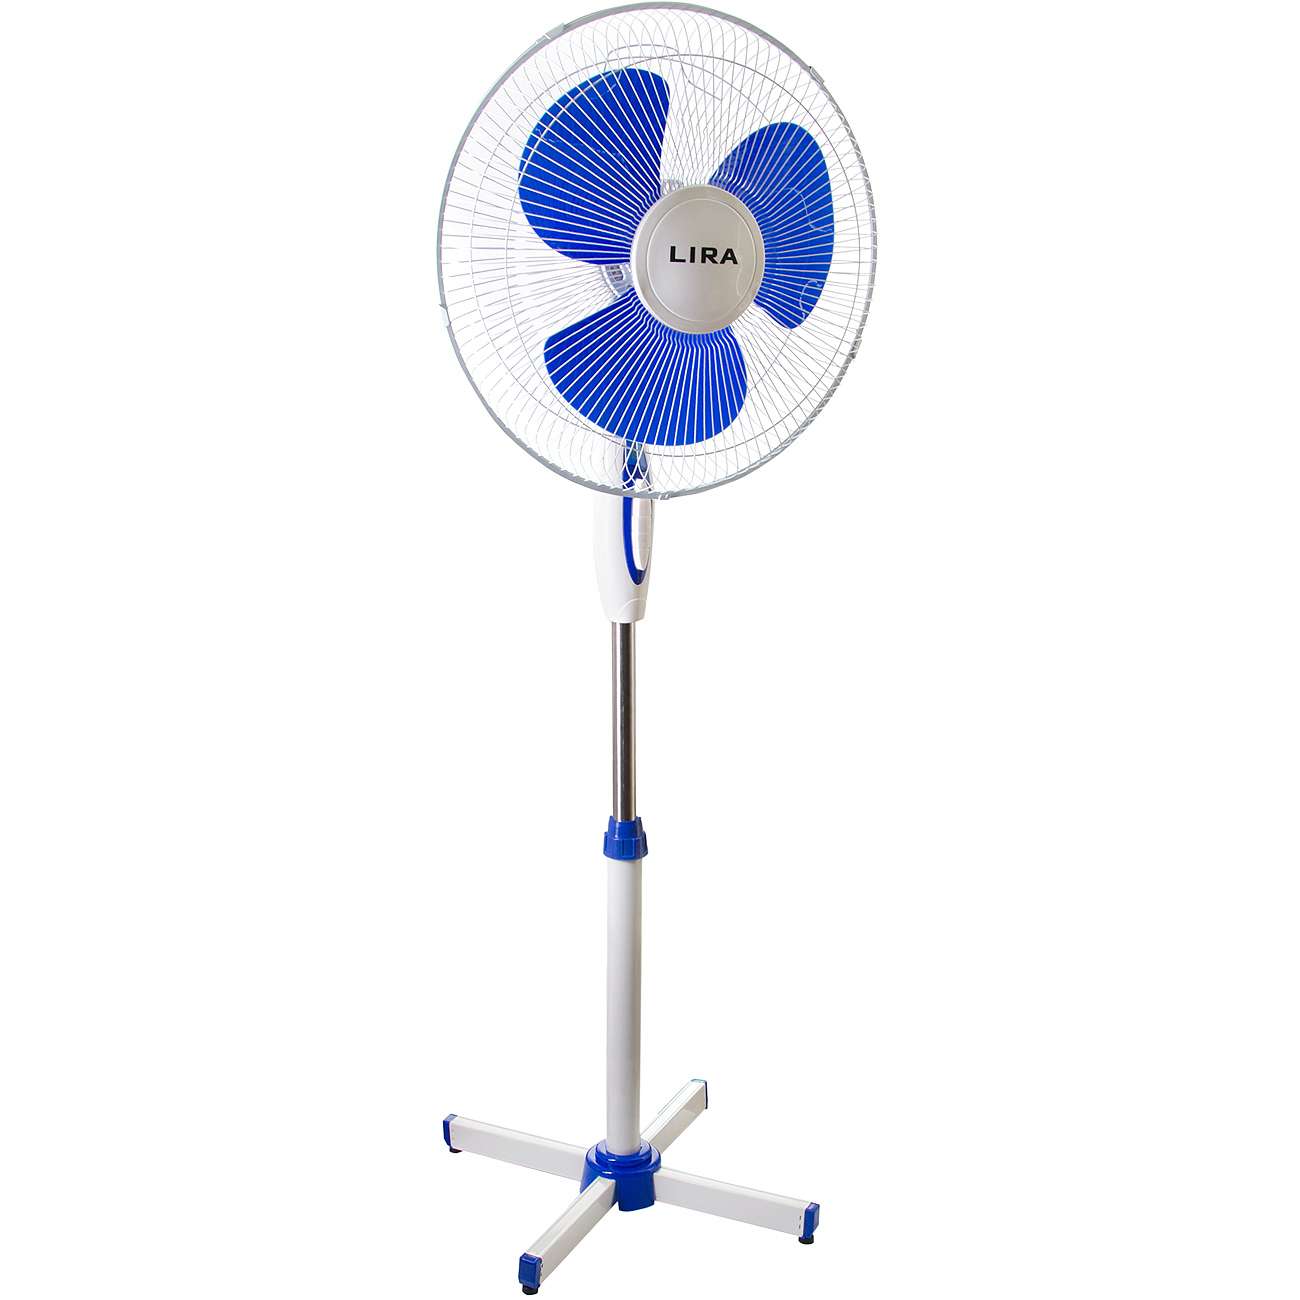 Вентилятор напольный Lira LIRA LR 1101 белый; синий вентилятор напольный sonnen stand fan белый синий